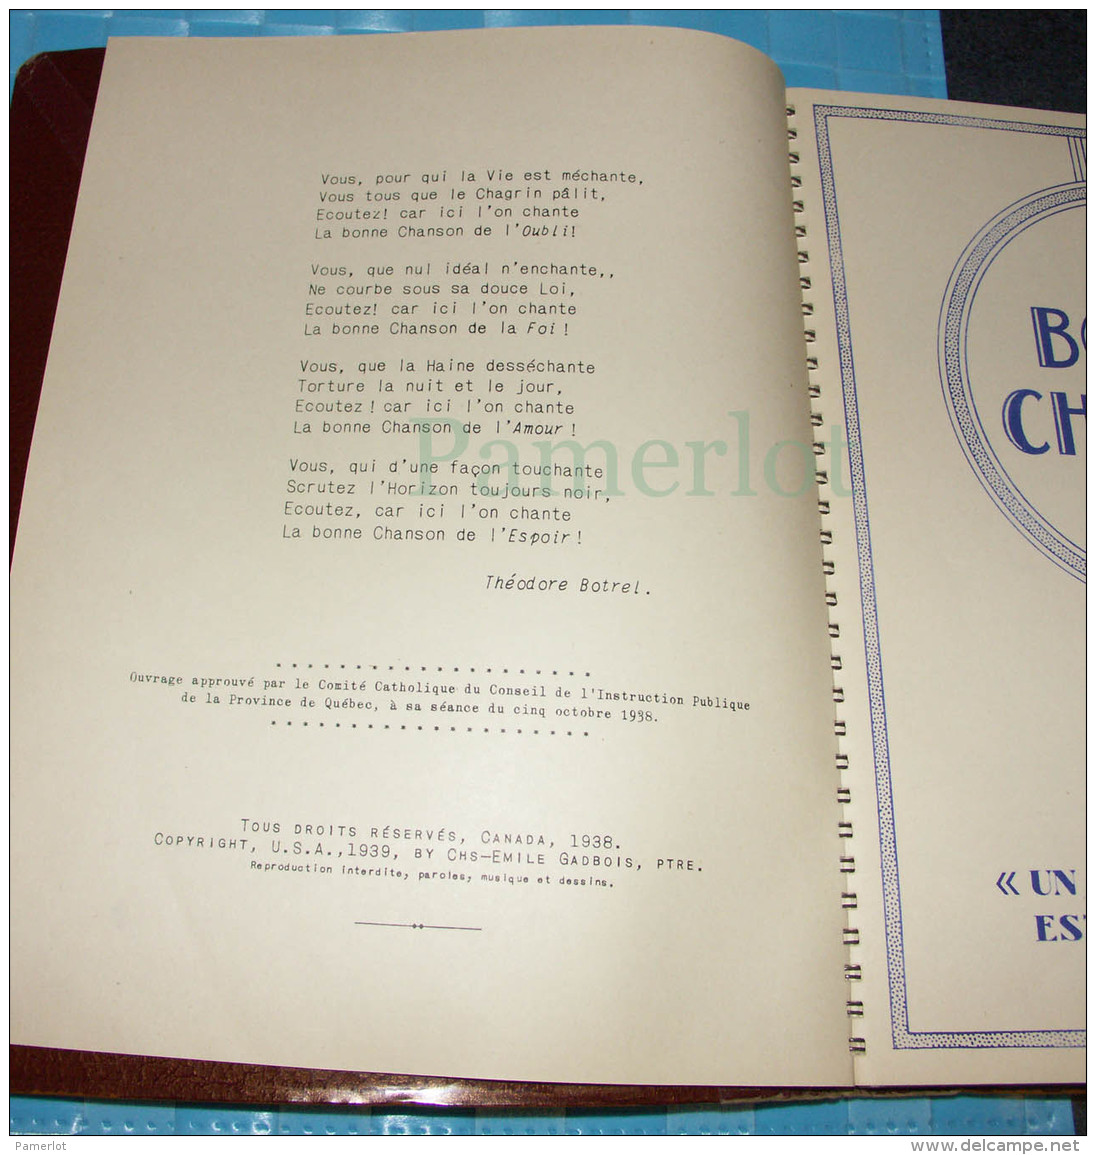 Seminaire de St-Hyacinthe, La Bonne Chanson par Charles-Emile Gadbois Ptre, 1938